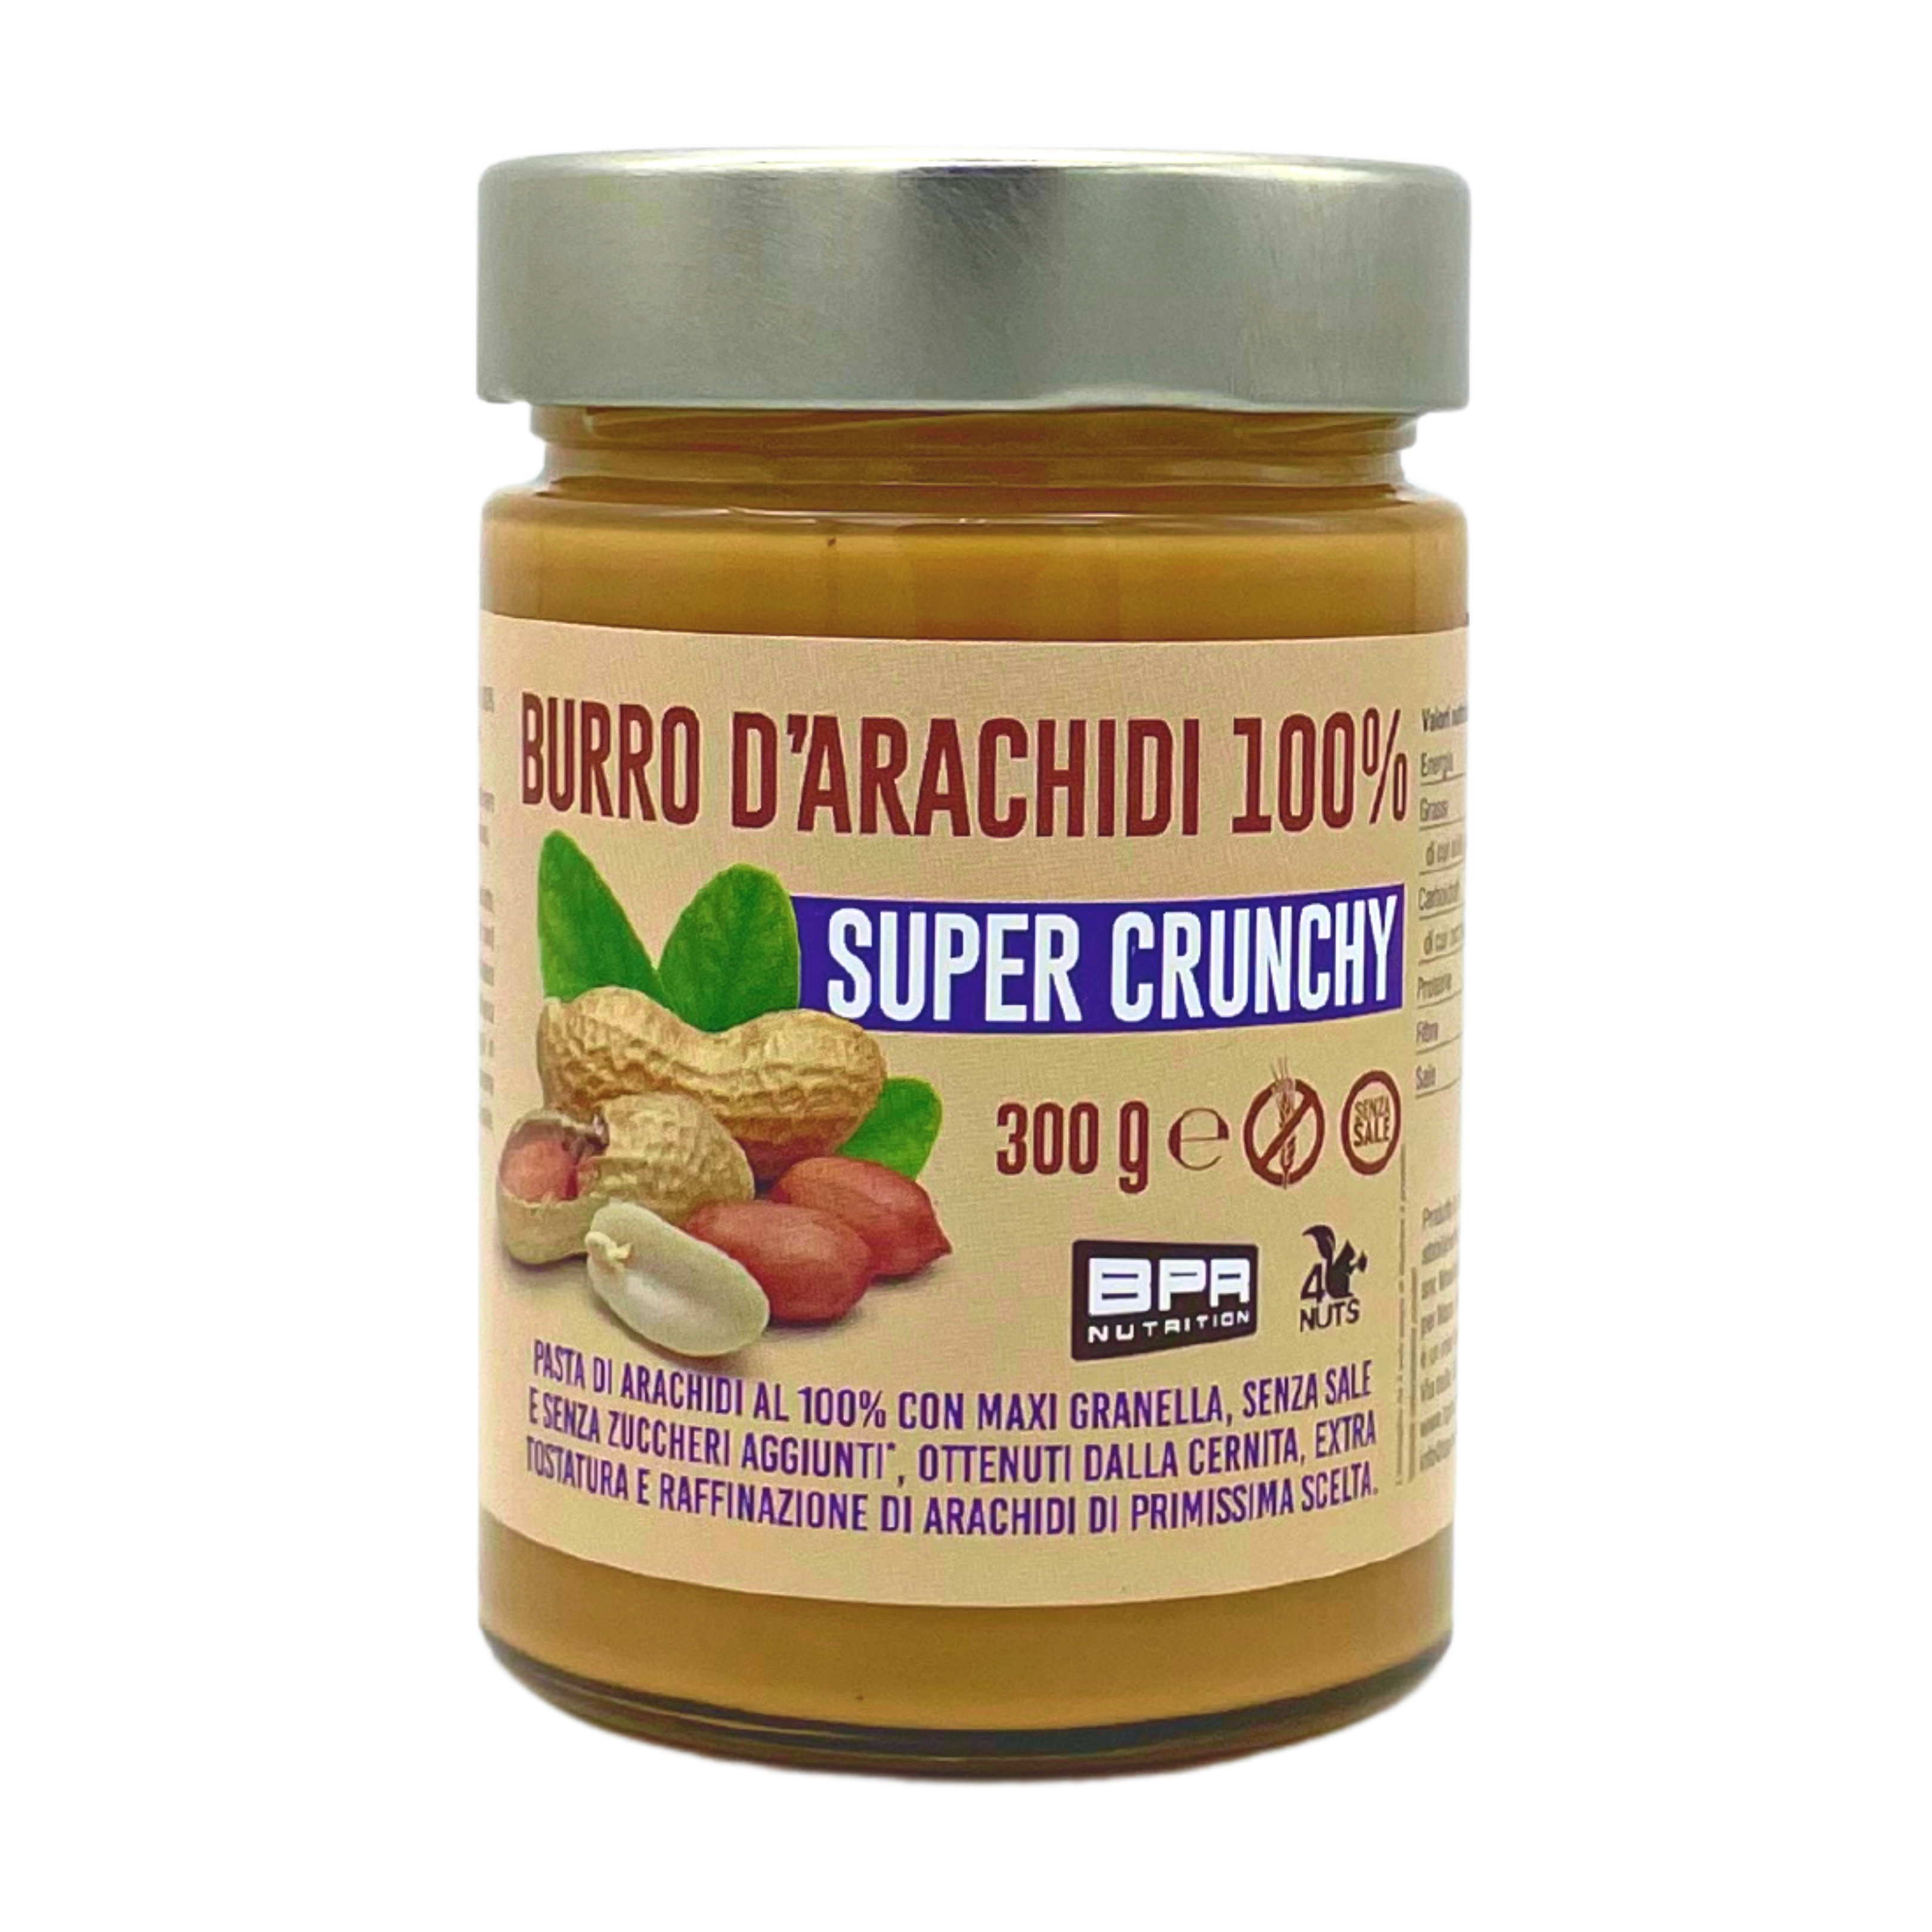 BPR Nutrition - Peanut Butter 100% Super Crunchy / Burro d’arachidi con  Maxi Granella 300g